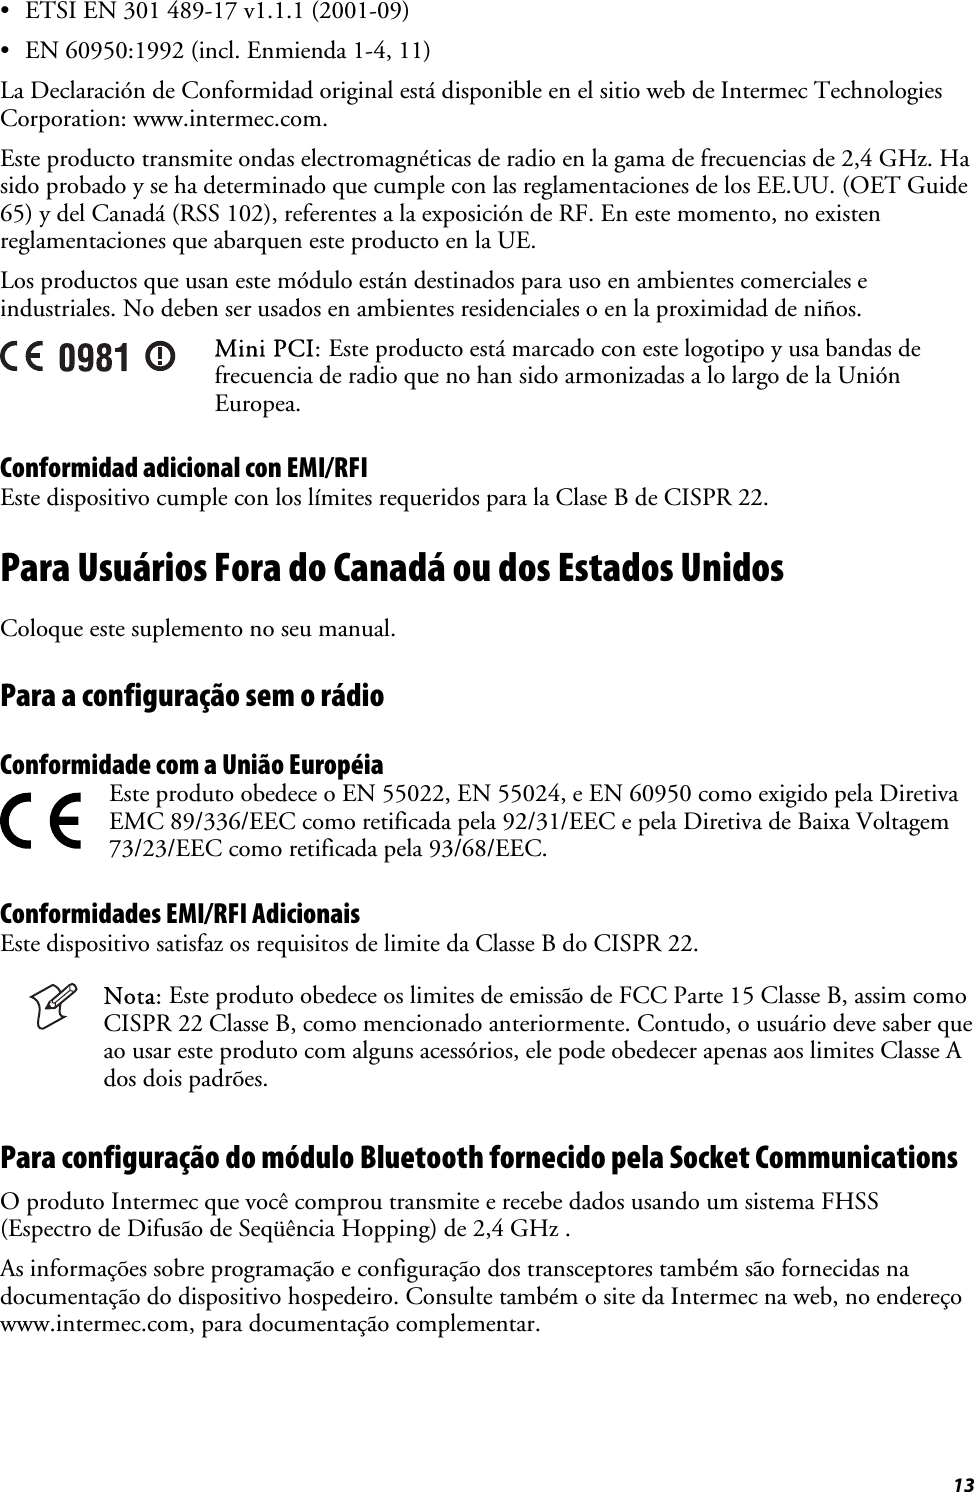  13 •  ETSI EN 301 489-17 v1.1.1 (2001-09) •  EN 60950:1992 (incl. Enmienda 1-4, 11) La Declaración de Conformidad original está disponible en el sitio web de Intermec Technologies Corporation: www.intermec.com. Este producto transmite ondas electromagnéticas de radio en la gama de frecuencias de 2,4 GHz. Ha sido probado y se ha determinado que cumple con las reglamentaciones de los EE.UU. (OET Guide 65) y del Canadá (RSS 102), referentes a la exposición de RF. En este momento, no existen reglamentaciones que abarquen este producto en la UE. Los productos que usan este módulo están destinados para uso en ambientes comerciales e industriales. No deben ser usados en ambientes residenciales o en la proximidad de niños.  Mini PCI: Este producto está marcado con este logotipo y usa bandas de frecuencia de radio que no han sido armonizadas a lo largo de la Unión Europea. Conformidad adicional con EMI/RFI Este dispositivo cumple con los límites requeridos para la Clase B de CISPR 22. Para Usuários Fora do Canadá ou dos Estados Unidos Coloque este suplemento no seu manual. Para a configuração sem o rádio Conformidade com a União Européia   Este produto obedece o EN 55022, EN 55024, e EN 60950 como exigido pela Diretiva EMC 89/336/EEC como retificada pela 92/31/EEC e pela Diretiva de Baixa Voltagem 73/23/EEC como retificada pela 93/68/EEC. Conformidades EMI/RFI Adicionais Este dispositivo satisfaz os requisitos de limite da Classe B do CISPR 22.  Nota: Este produto obedece os limites de emissão de FCC Parte 15 Classe B, assim como CISPR 22 Classe B, como mencionado anteriormente. Contudo, o usuário deve saber que ao usar este produto com alguns acessórios, ele pode obedecer apenas aos limites Classe A dos dois padrões. Para configuração do módulo Bluetooth fornecido pela Socket Communications O produto Intermec que você comprou transmite e recebe dados usando um sistema FHSS (Espectro de Difusão de Seqüência Hopping) de 2,4 GHz . As informações sobre programação e configuração dos transceptores também são fornecidas na documentação do dispositivo hospedeiro. Consulte também o site da Intermec na web, no endereço www.intermec.com, para documentação complementar. 